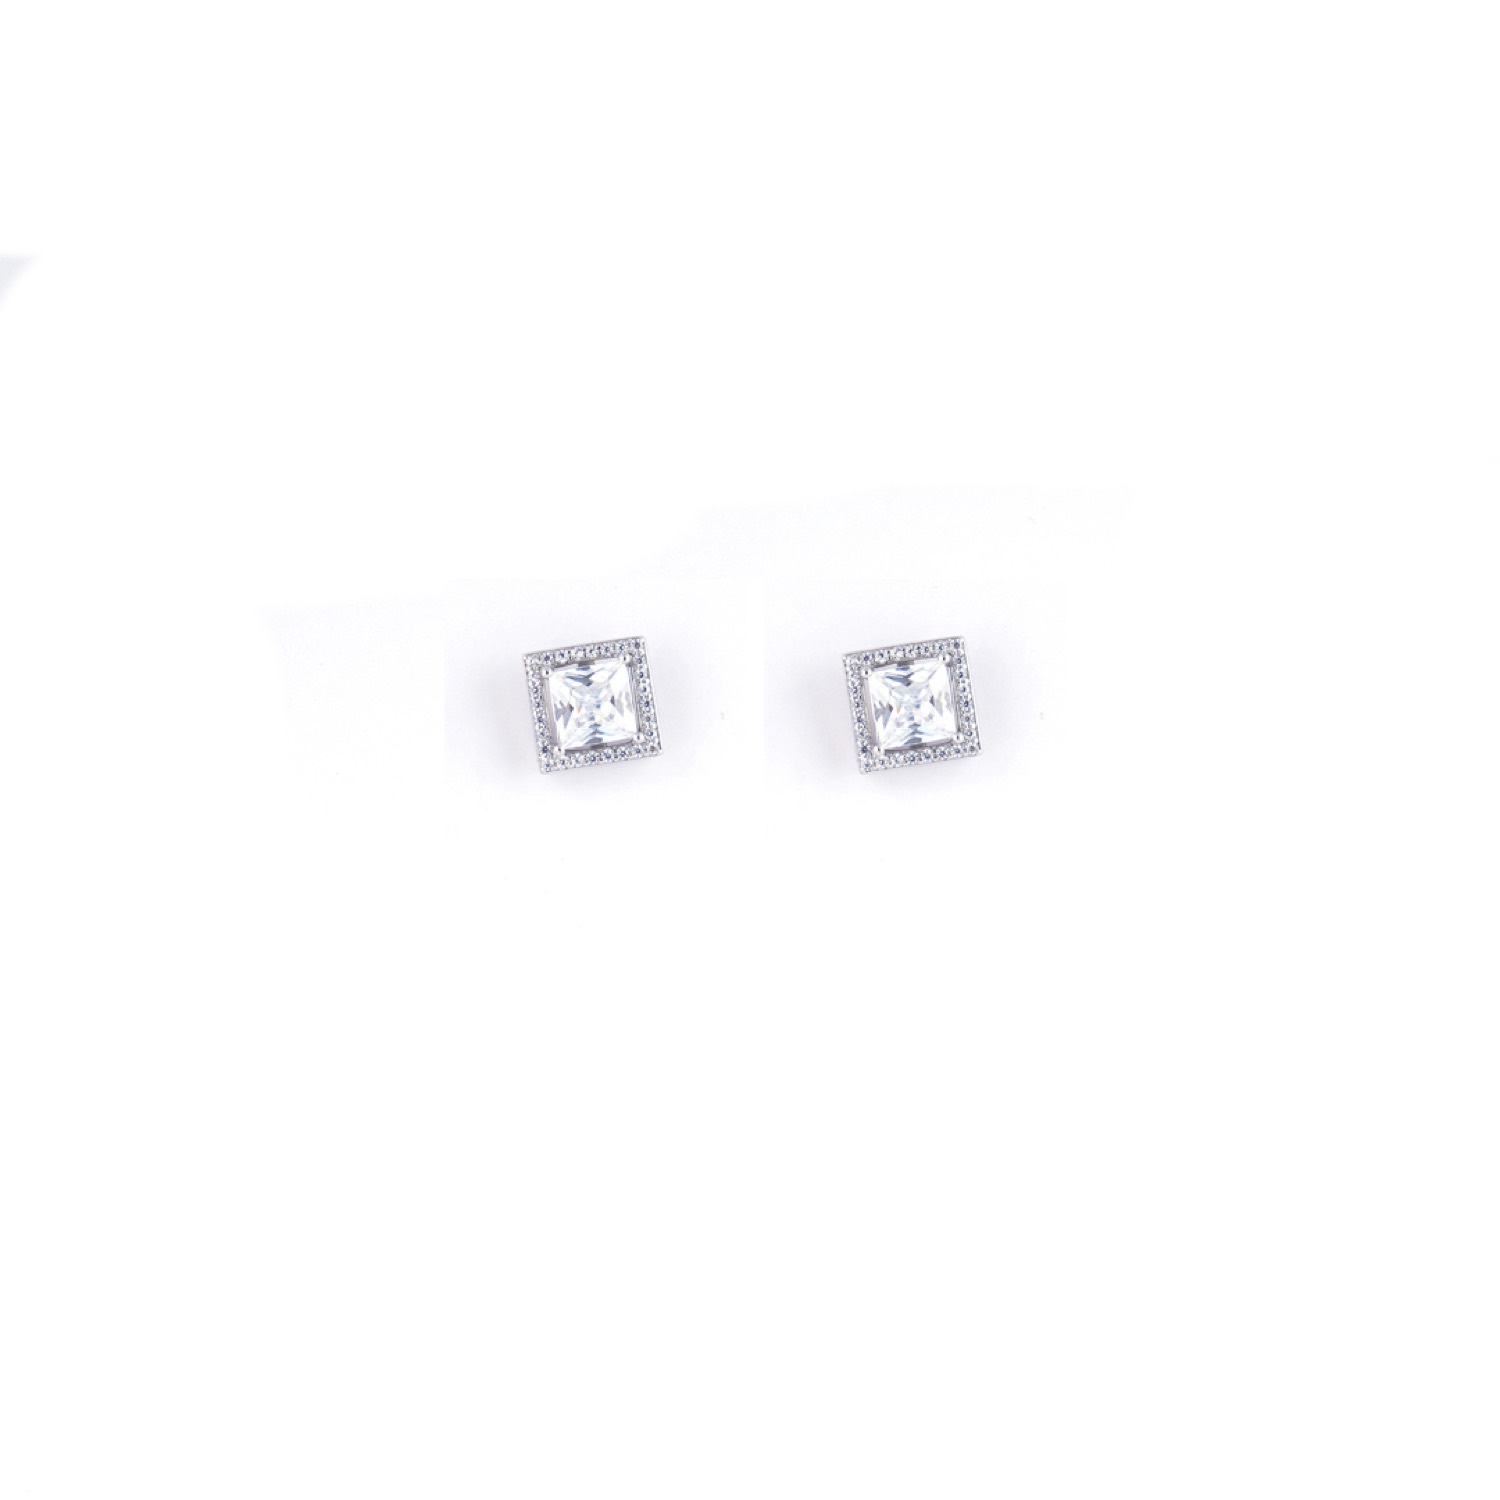 varam_earrings_102022_square_shaped_white_stone_silver_earrings-1